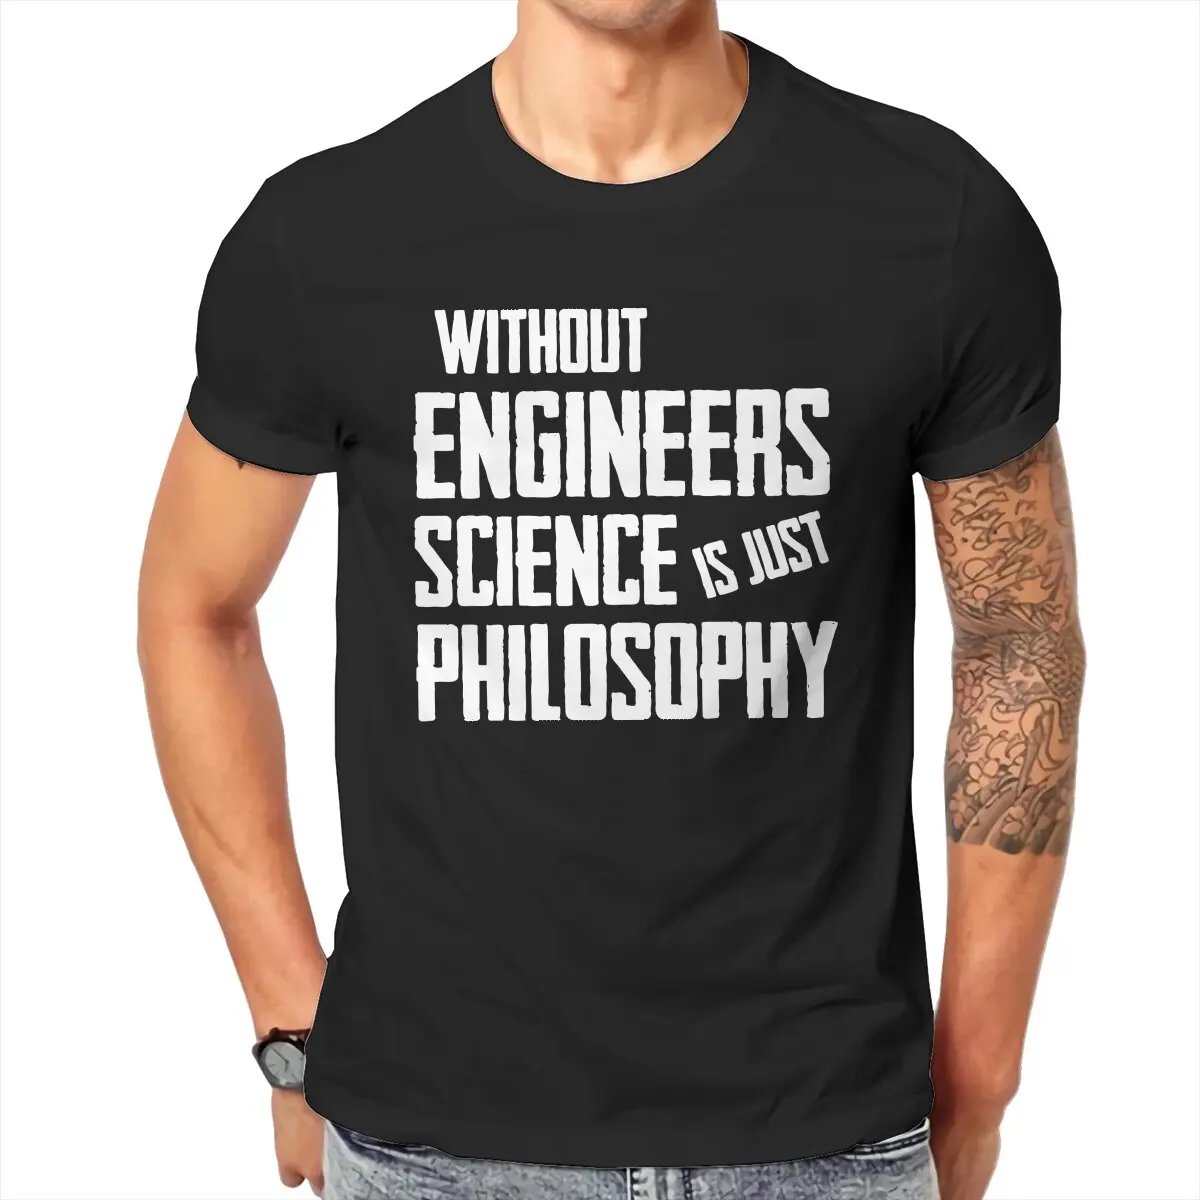 

Футболка мужская с коротким рукавом, хлопок, Облегающая рубашка для фитнеса, без инженеров, наука Is Just Philosophy, 6XL